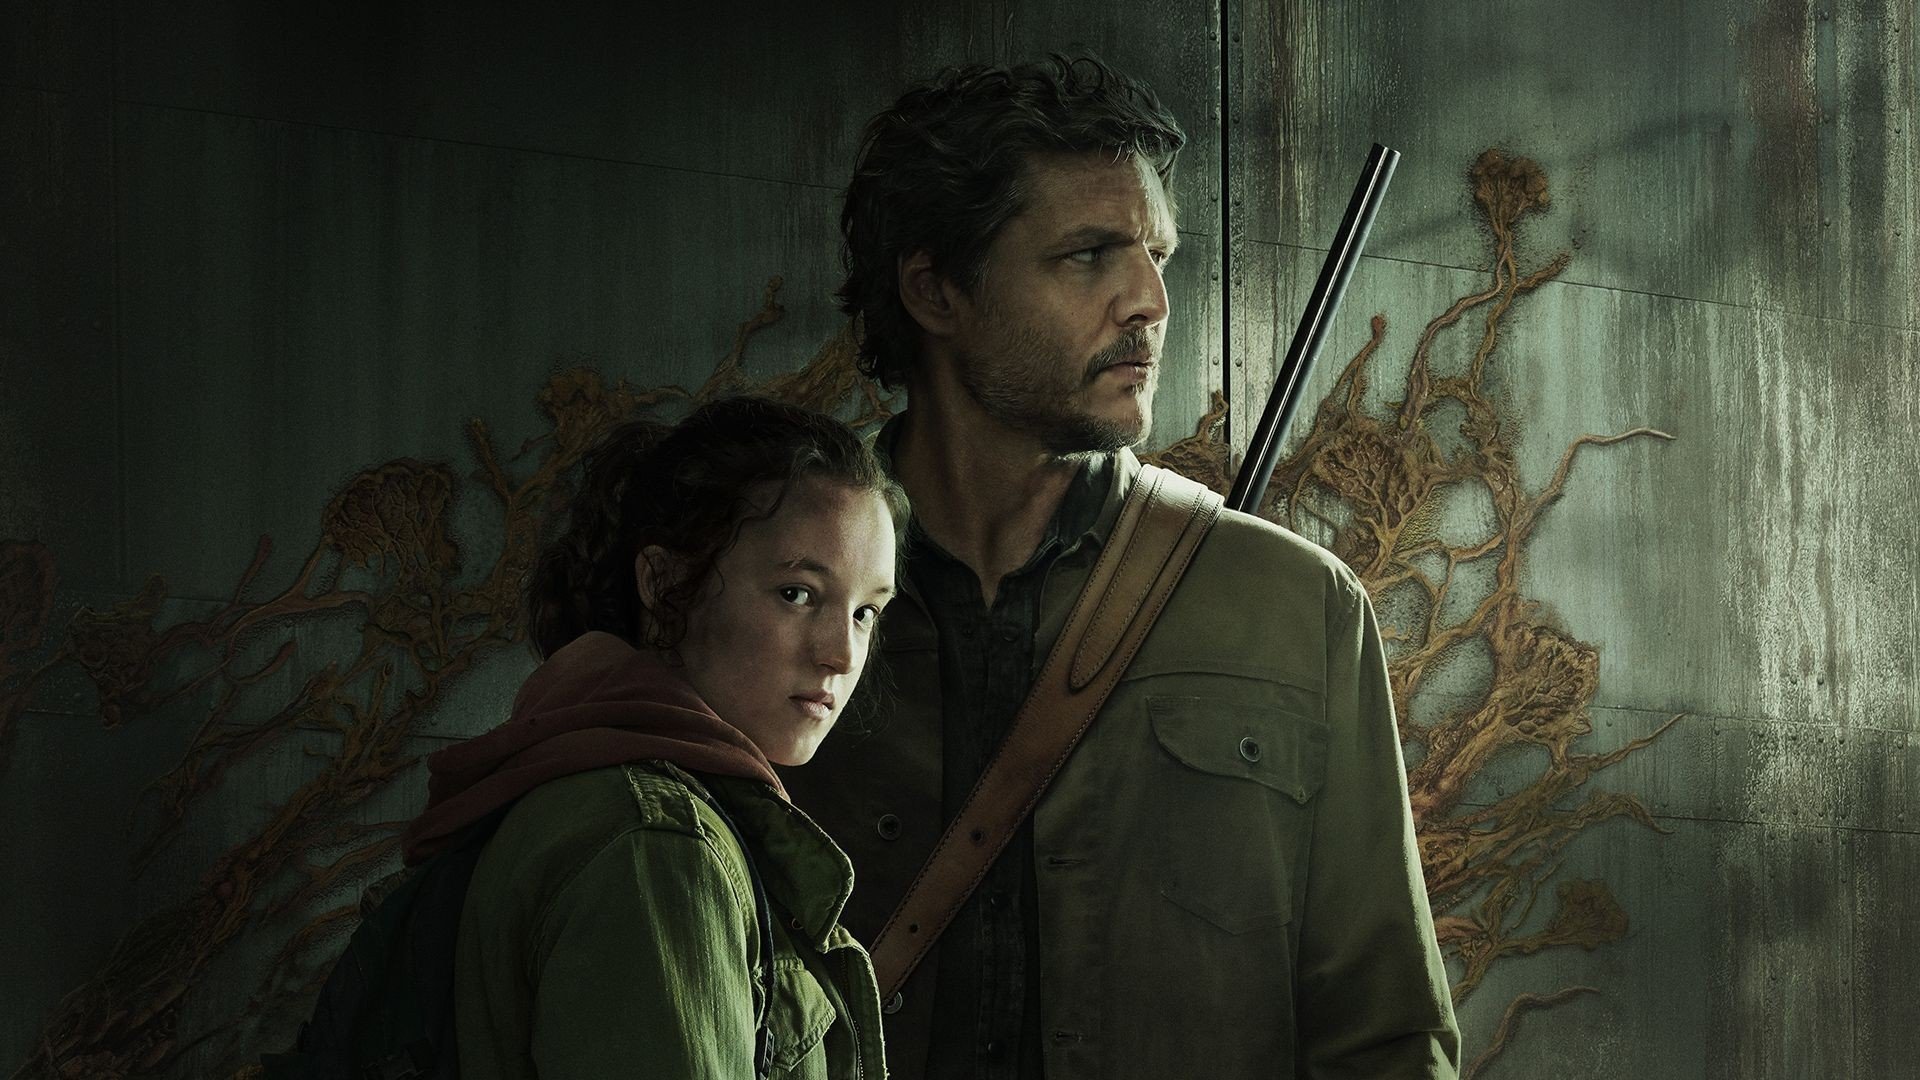 The Last of Us é renovada e tem 2ª temporada confirmada pela HBO 